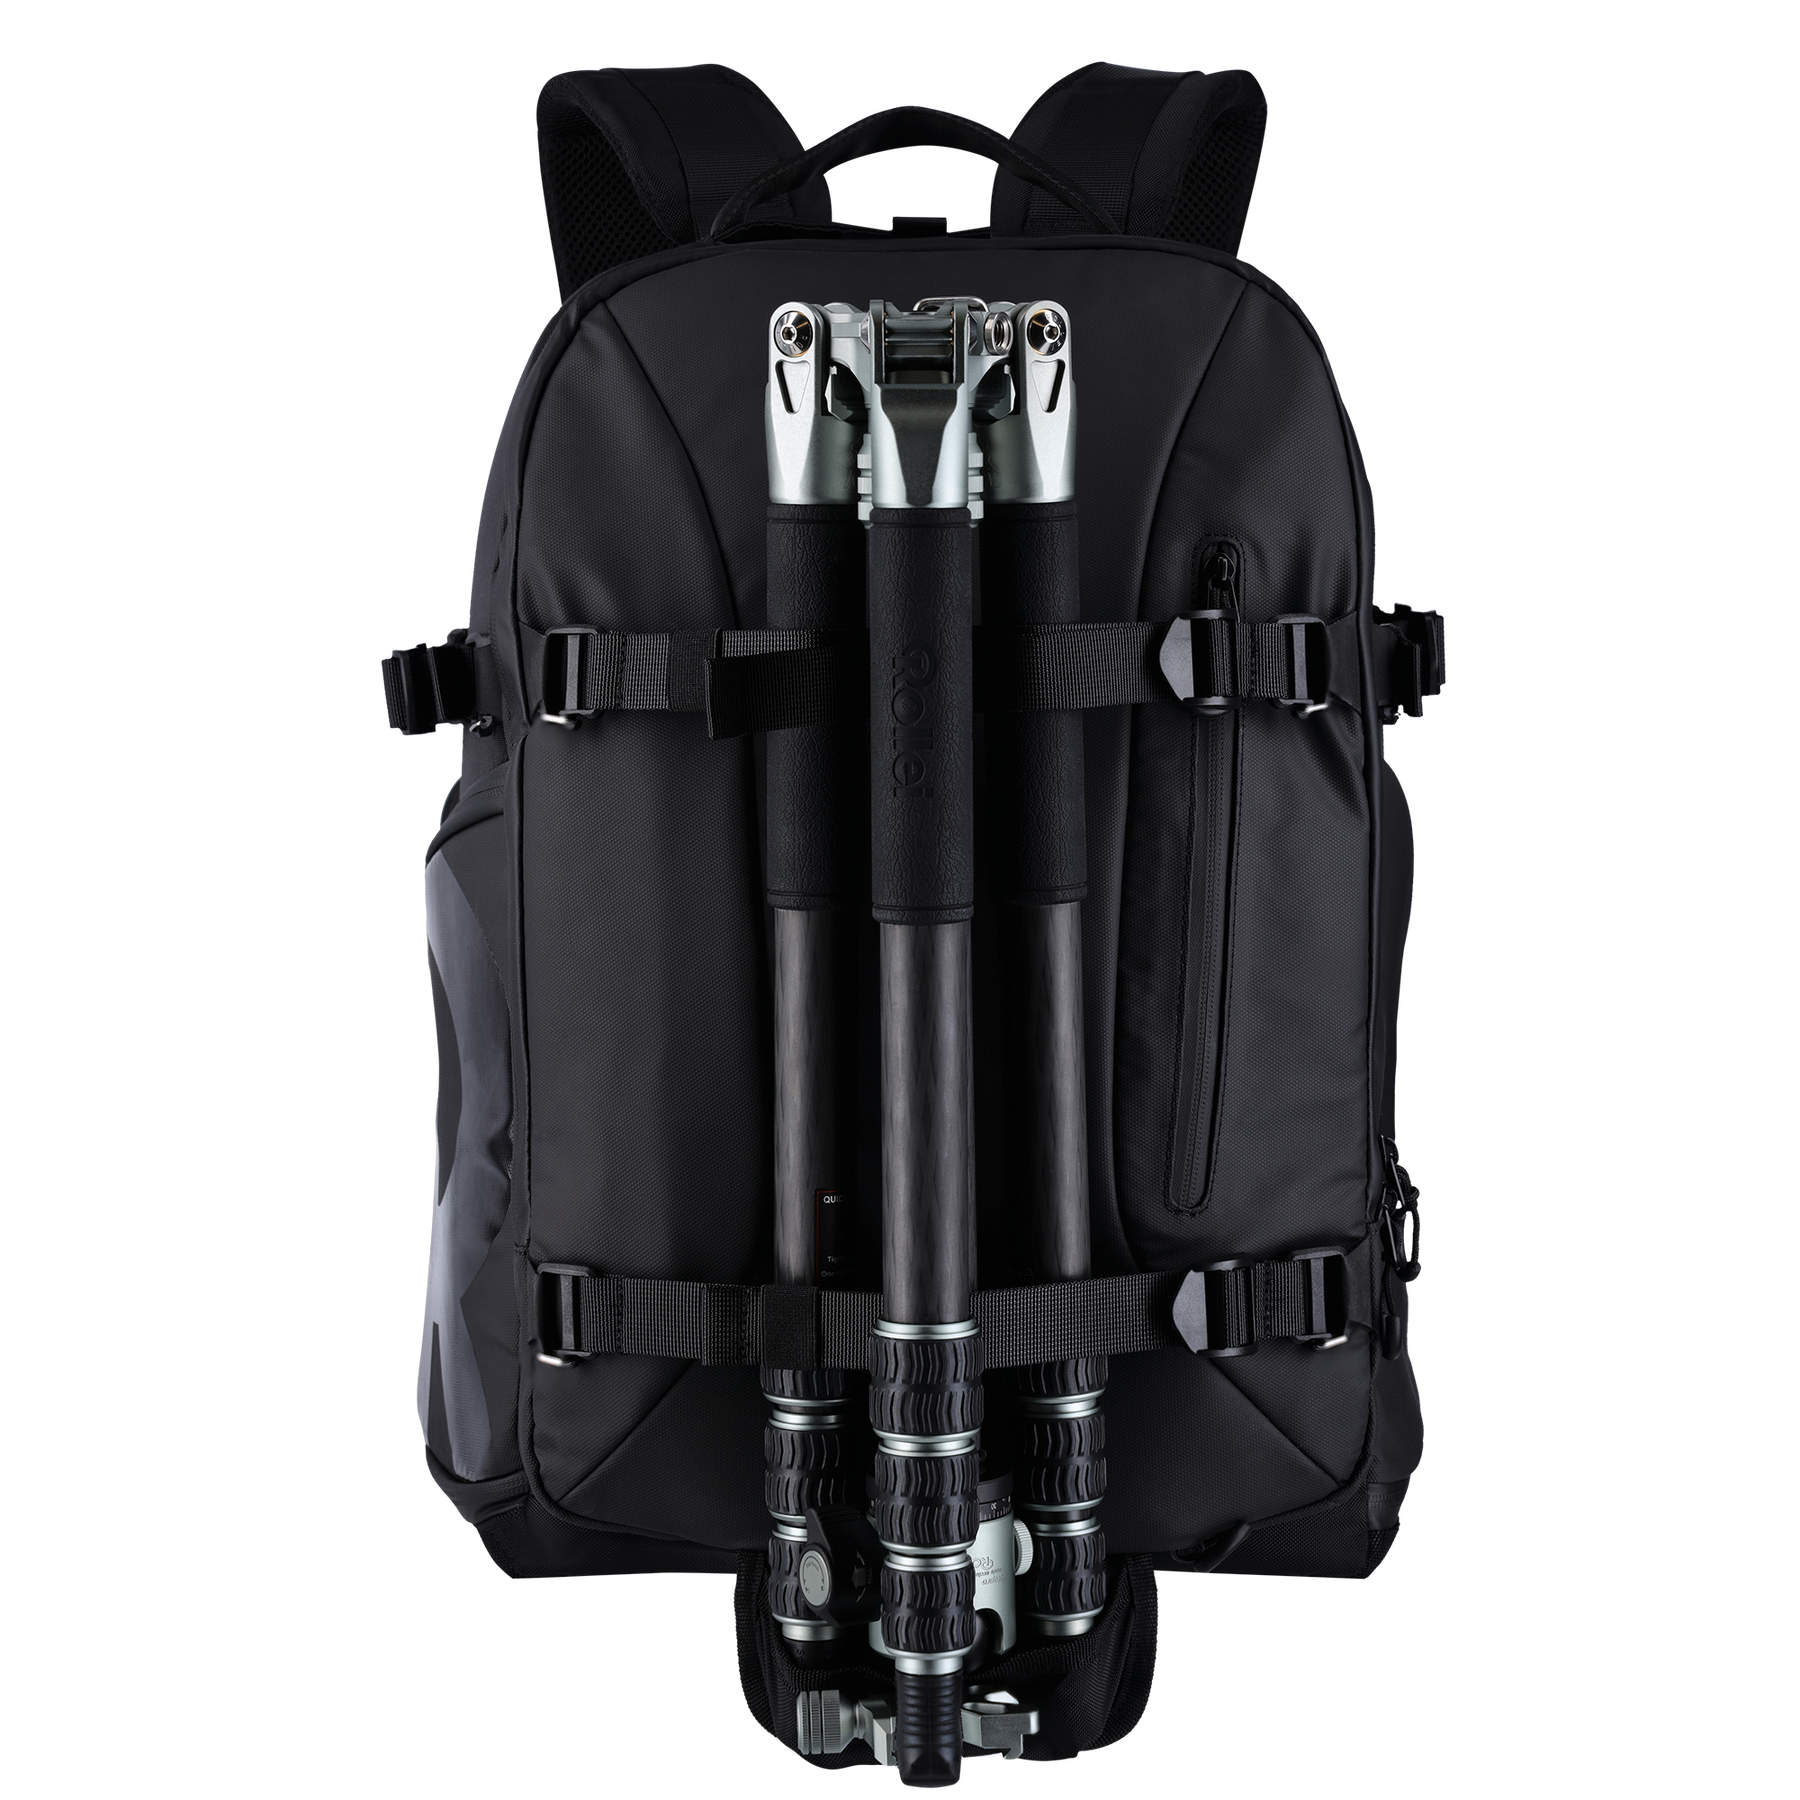 Photo backpack Fotoliner Ocean Pro - Black